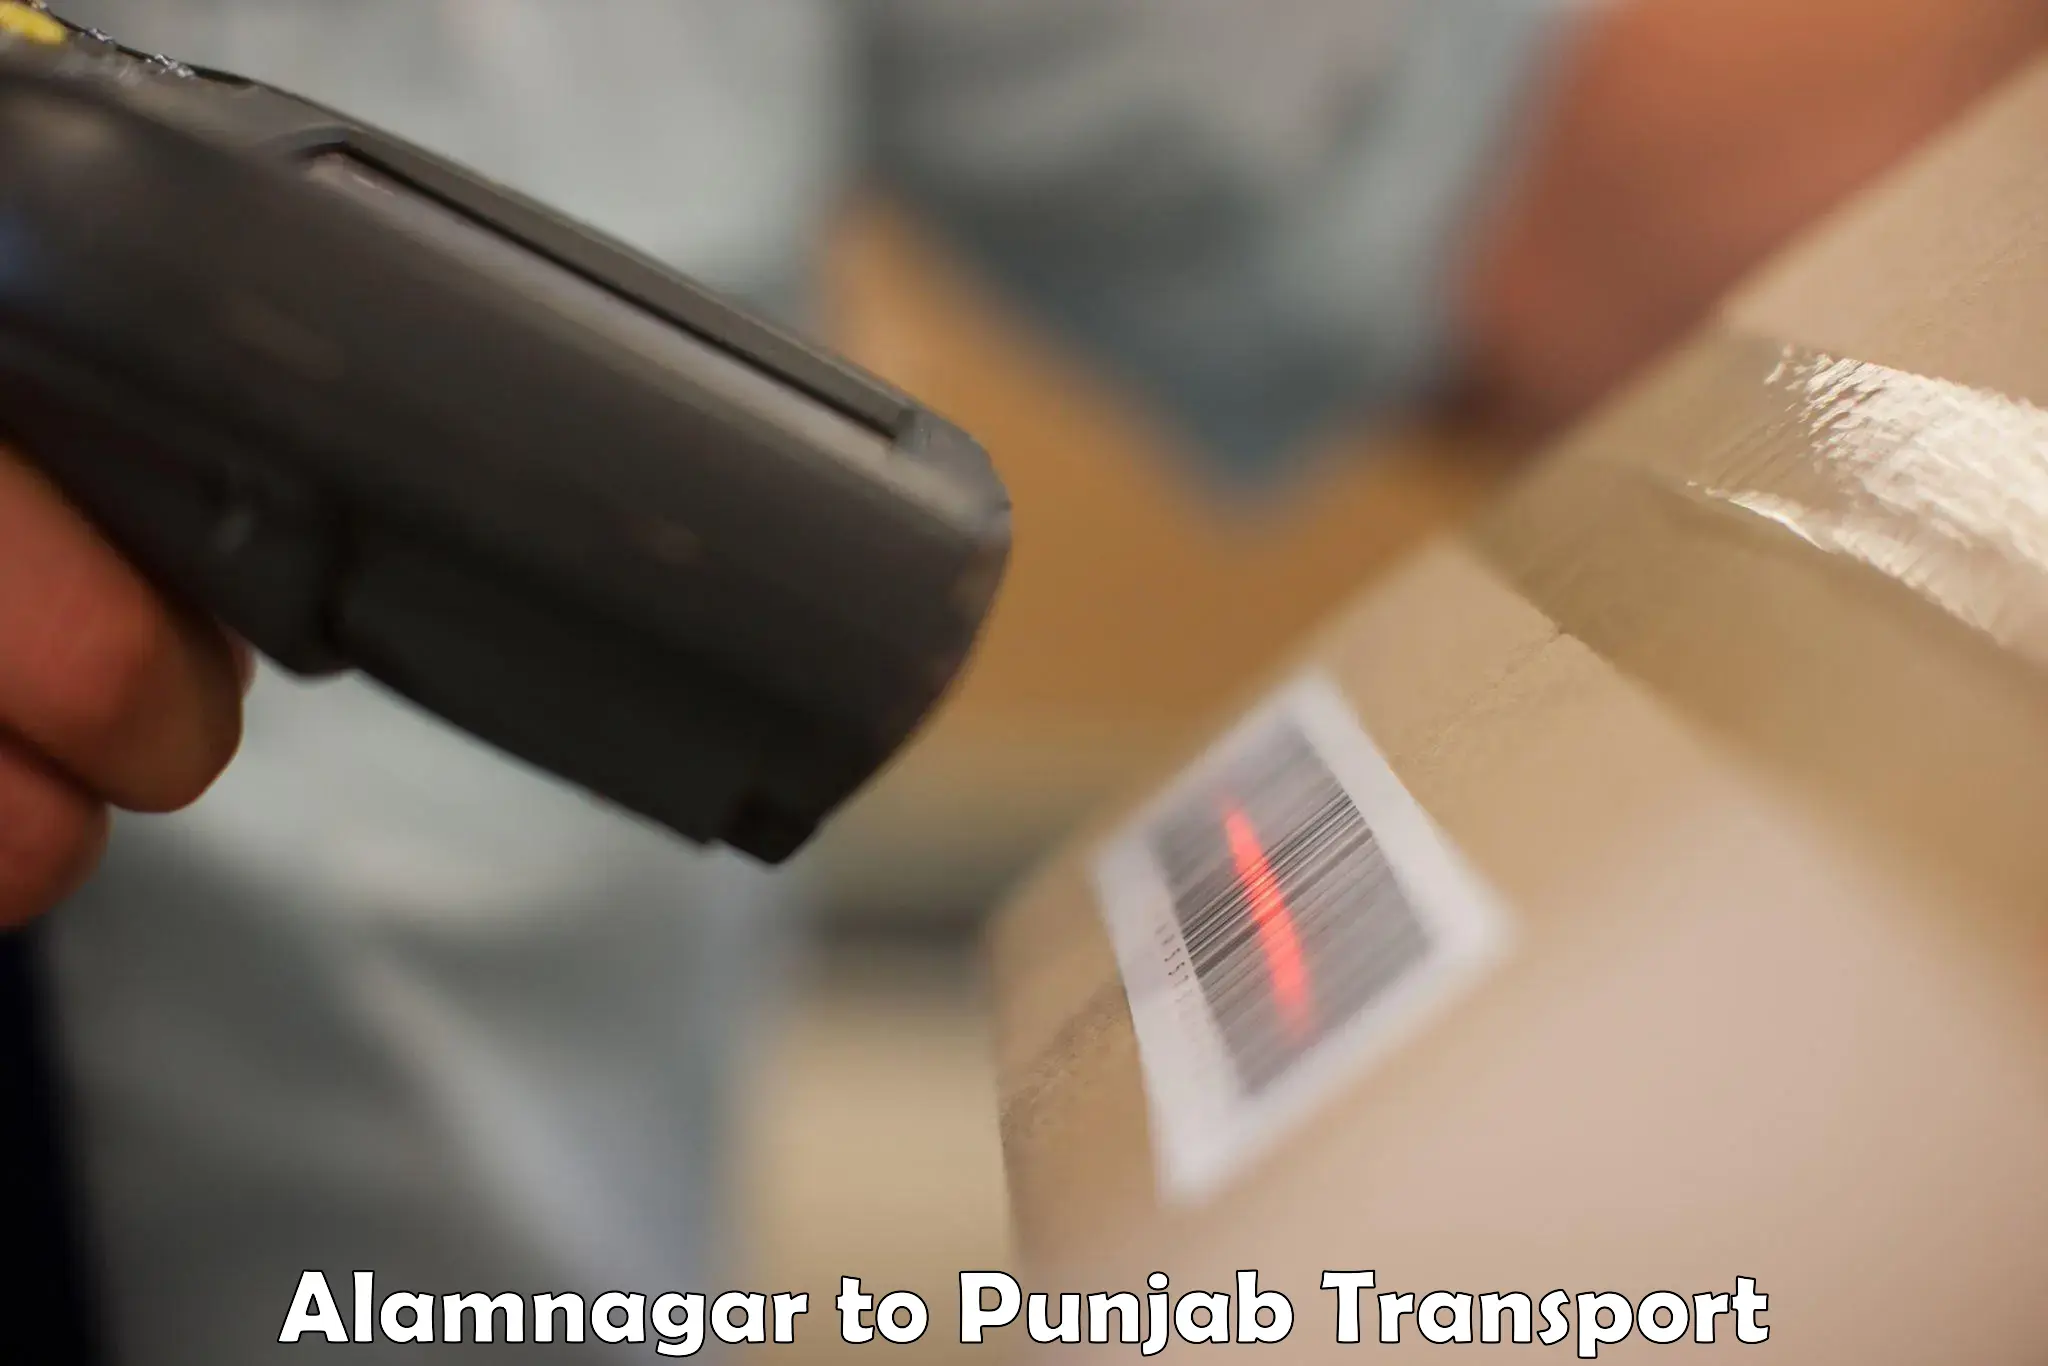 Air freight transport services Alamnagar to Dinanagar